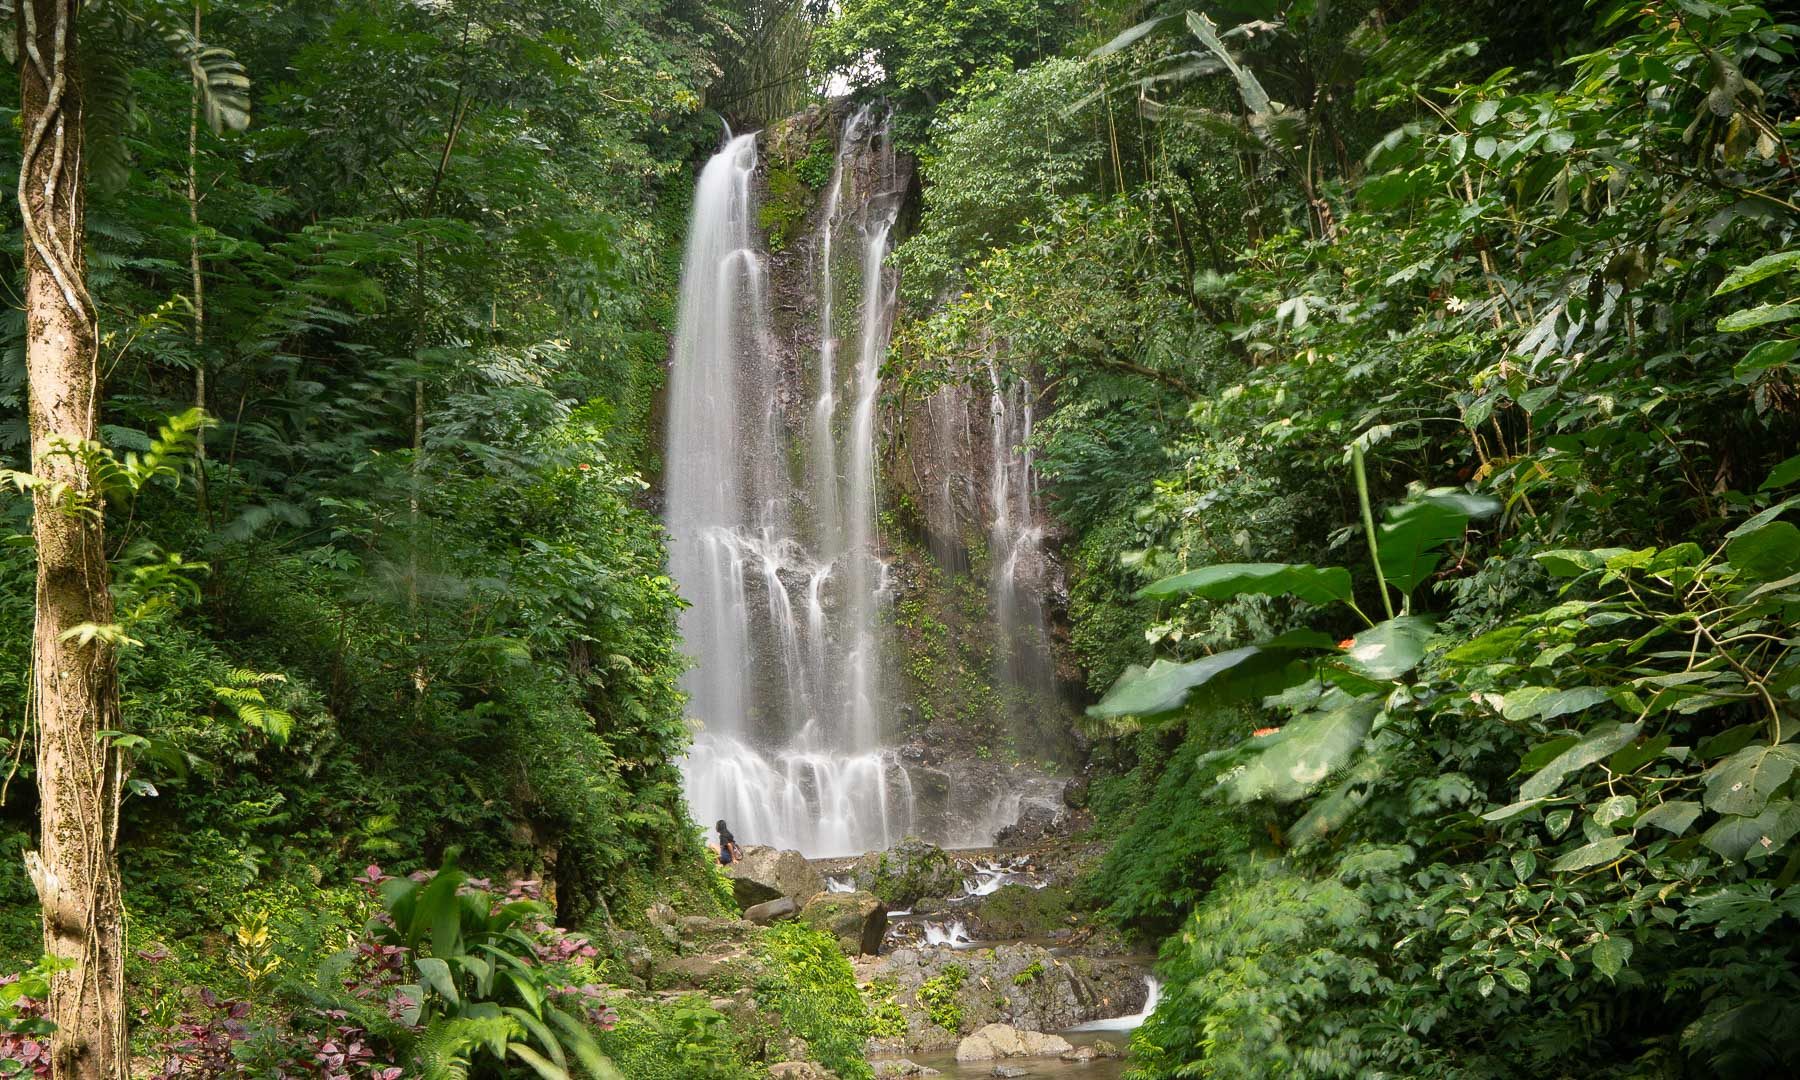 Munduk, Bali - Things to do: Labuhan Kebo Waterfall